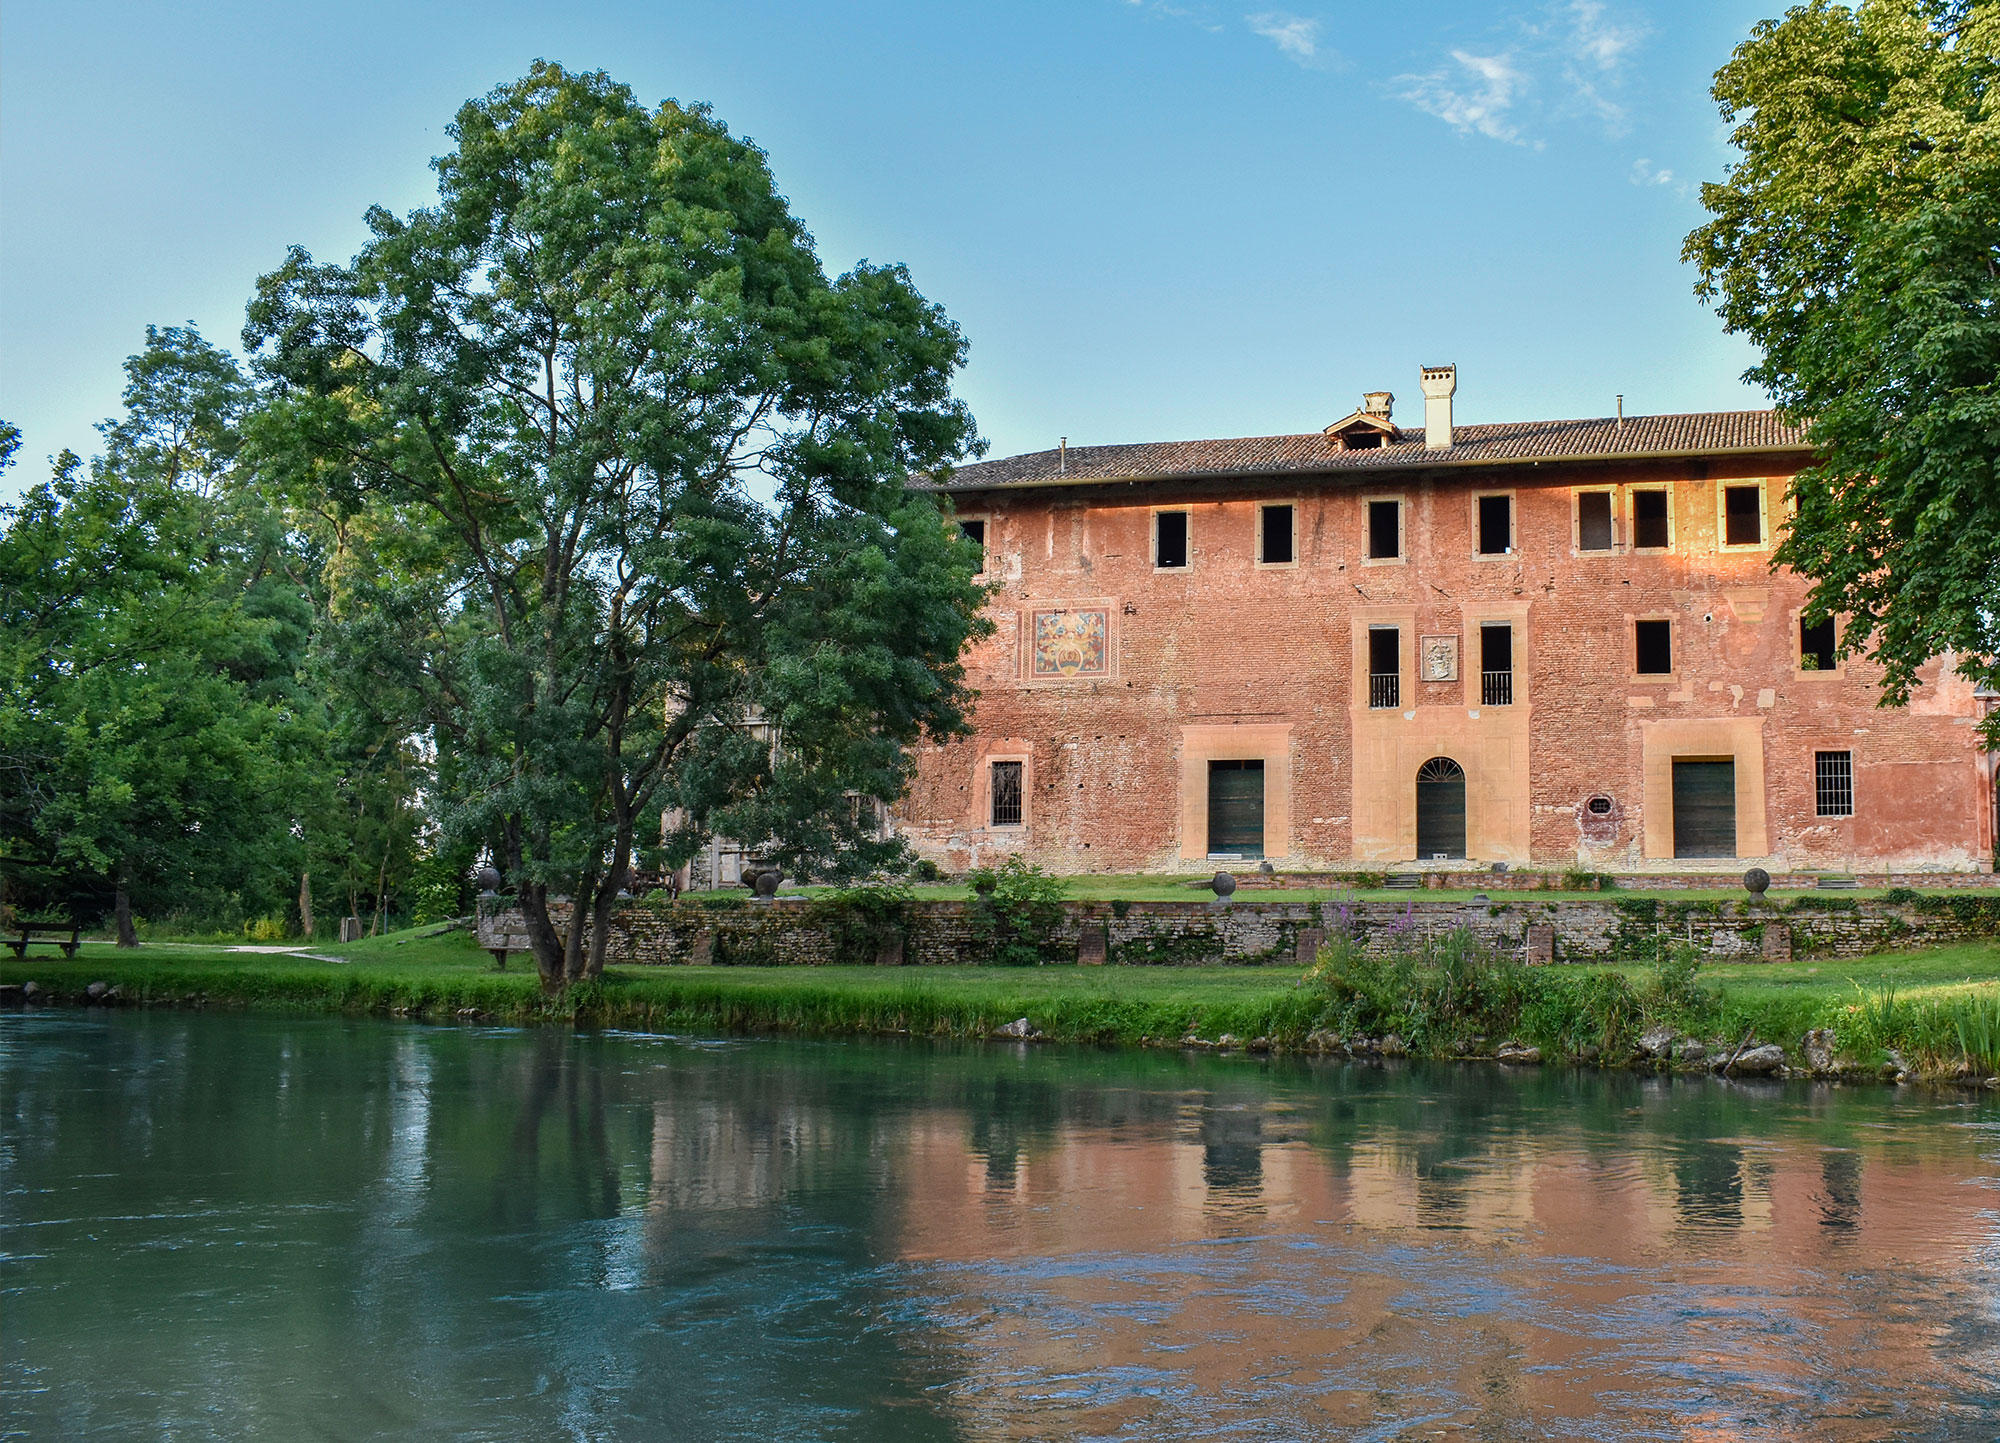 Villa Ottelio Savorgnan affacciata sul fiume Stella